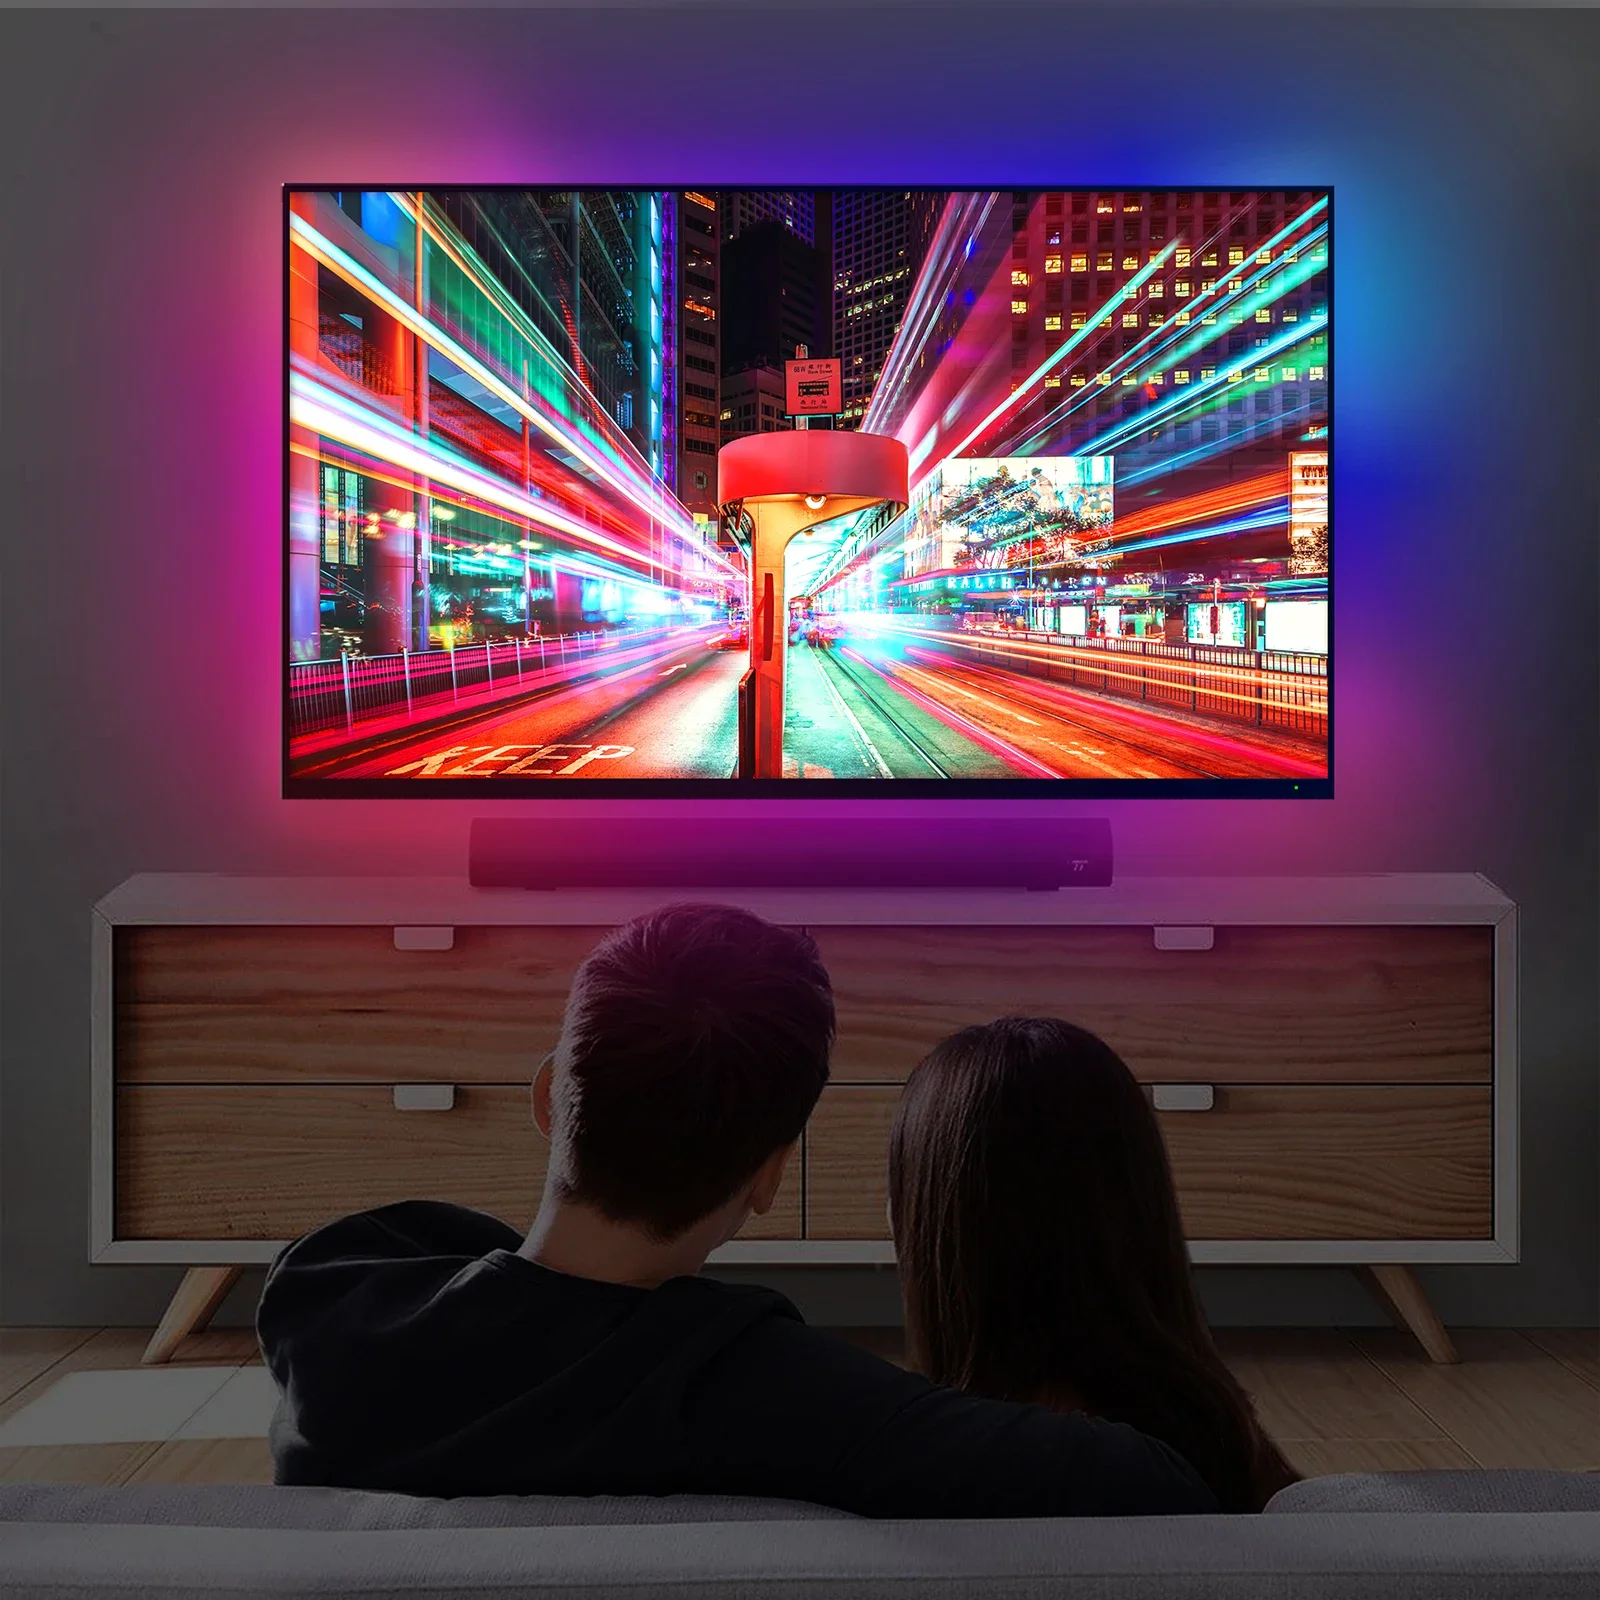 MOES WiFi Inteligente Inteligente Ambiente TV TV Backlight HDMI 2.0 Caixa de sincronização LED LIVRES LUZES DE TRILHA DE LEDA ALEXA Voice Google Assistant Control